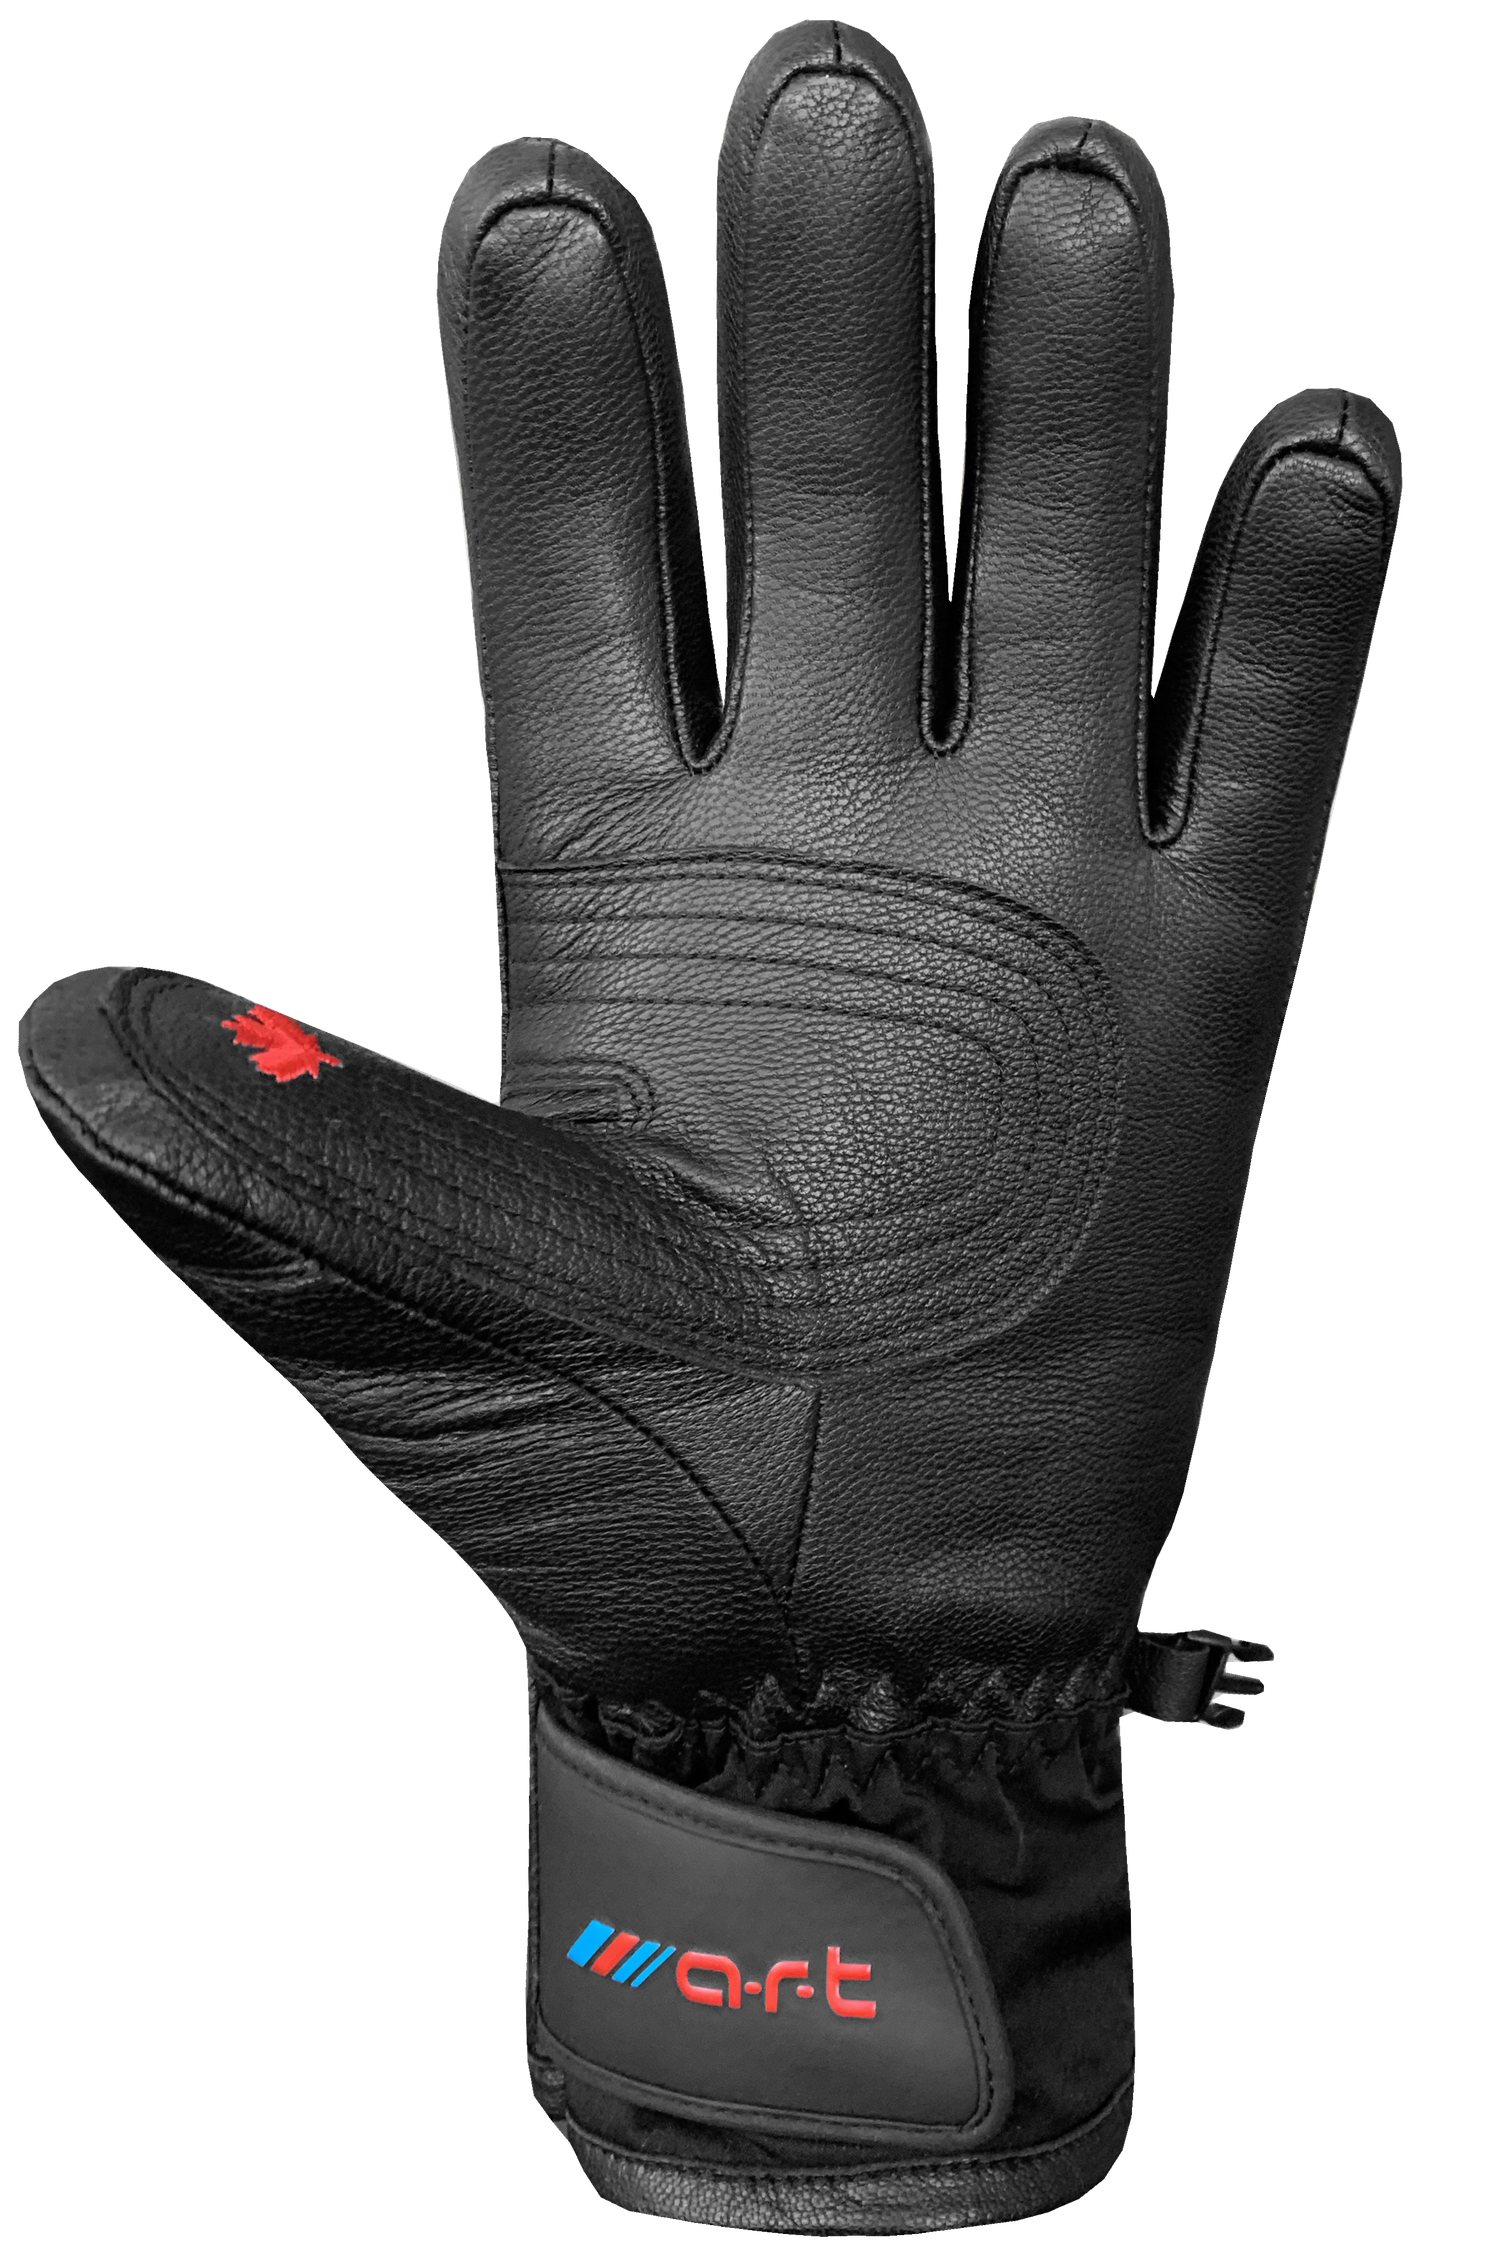 Son of T 4 Gloves - Adult, Black/Black